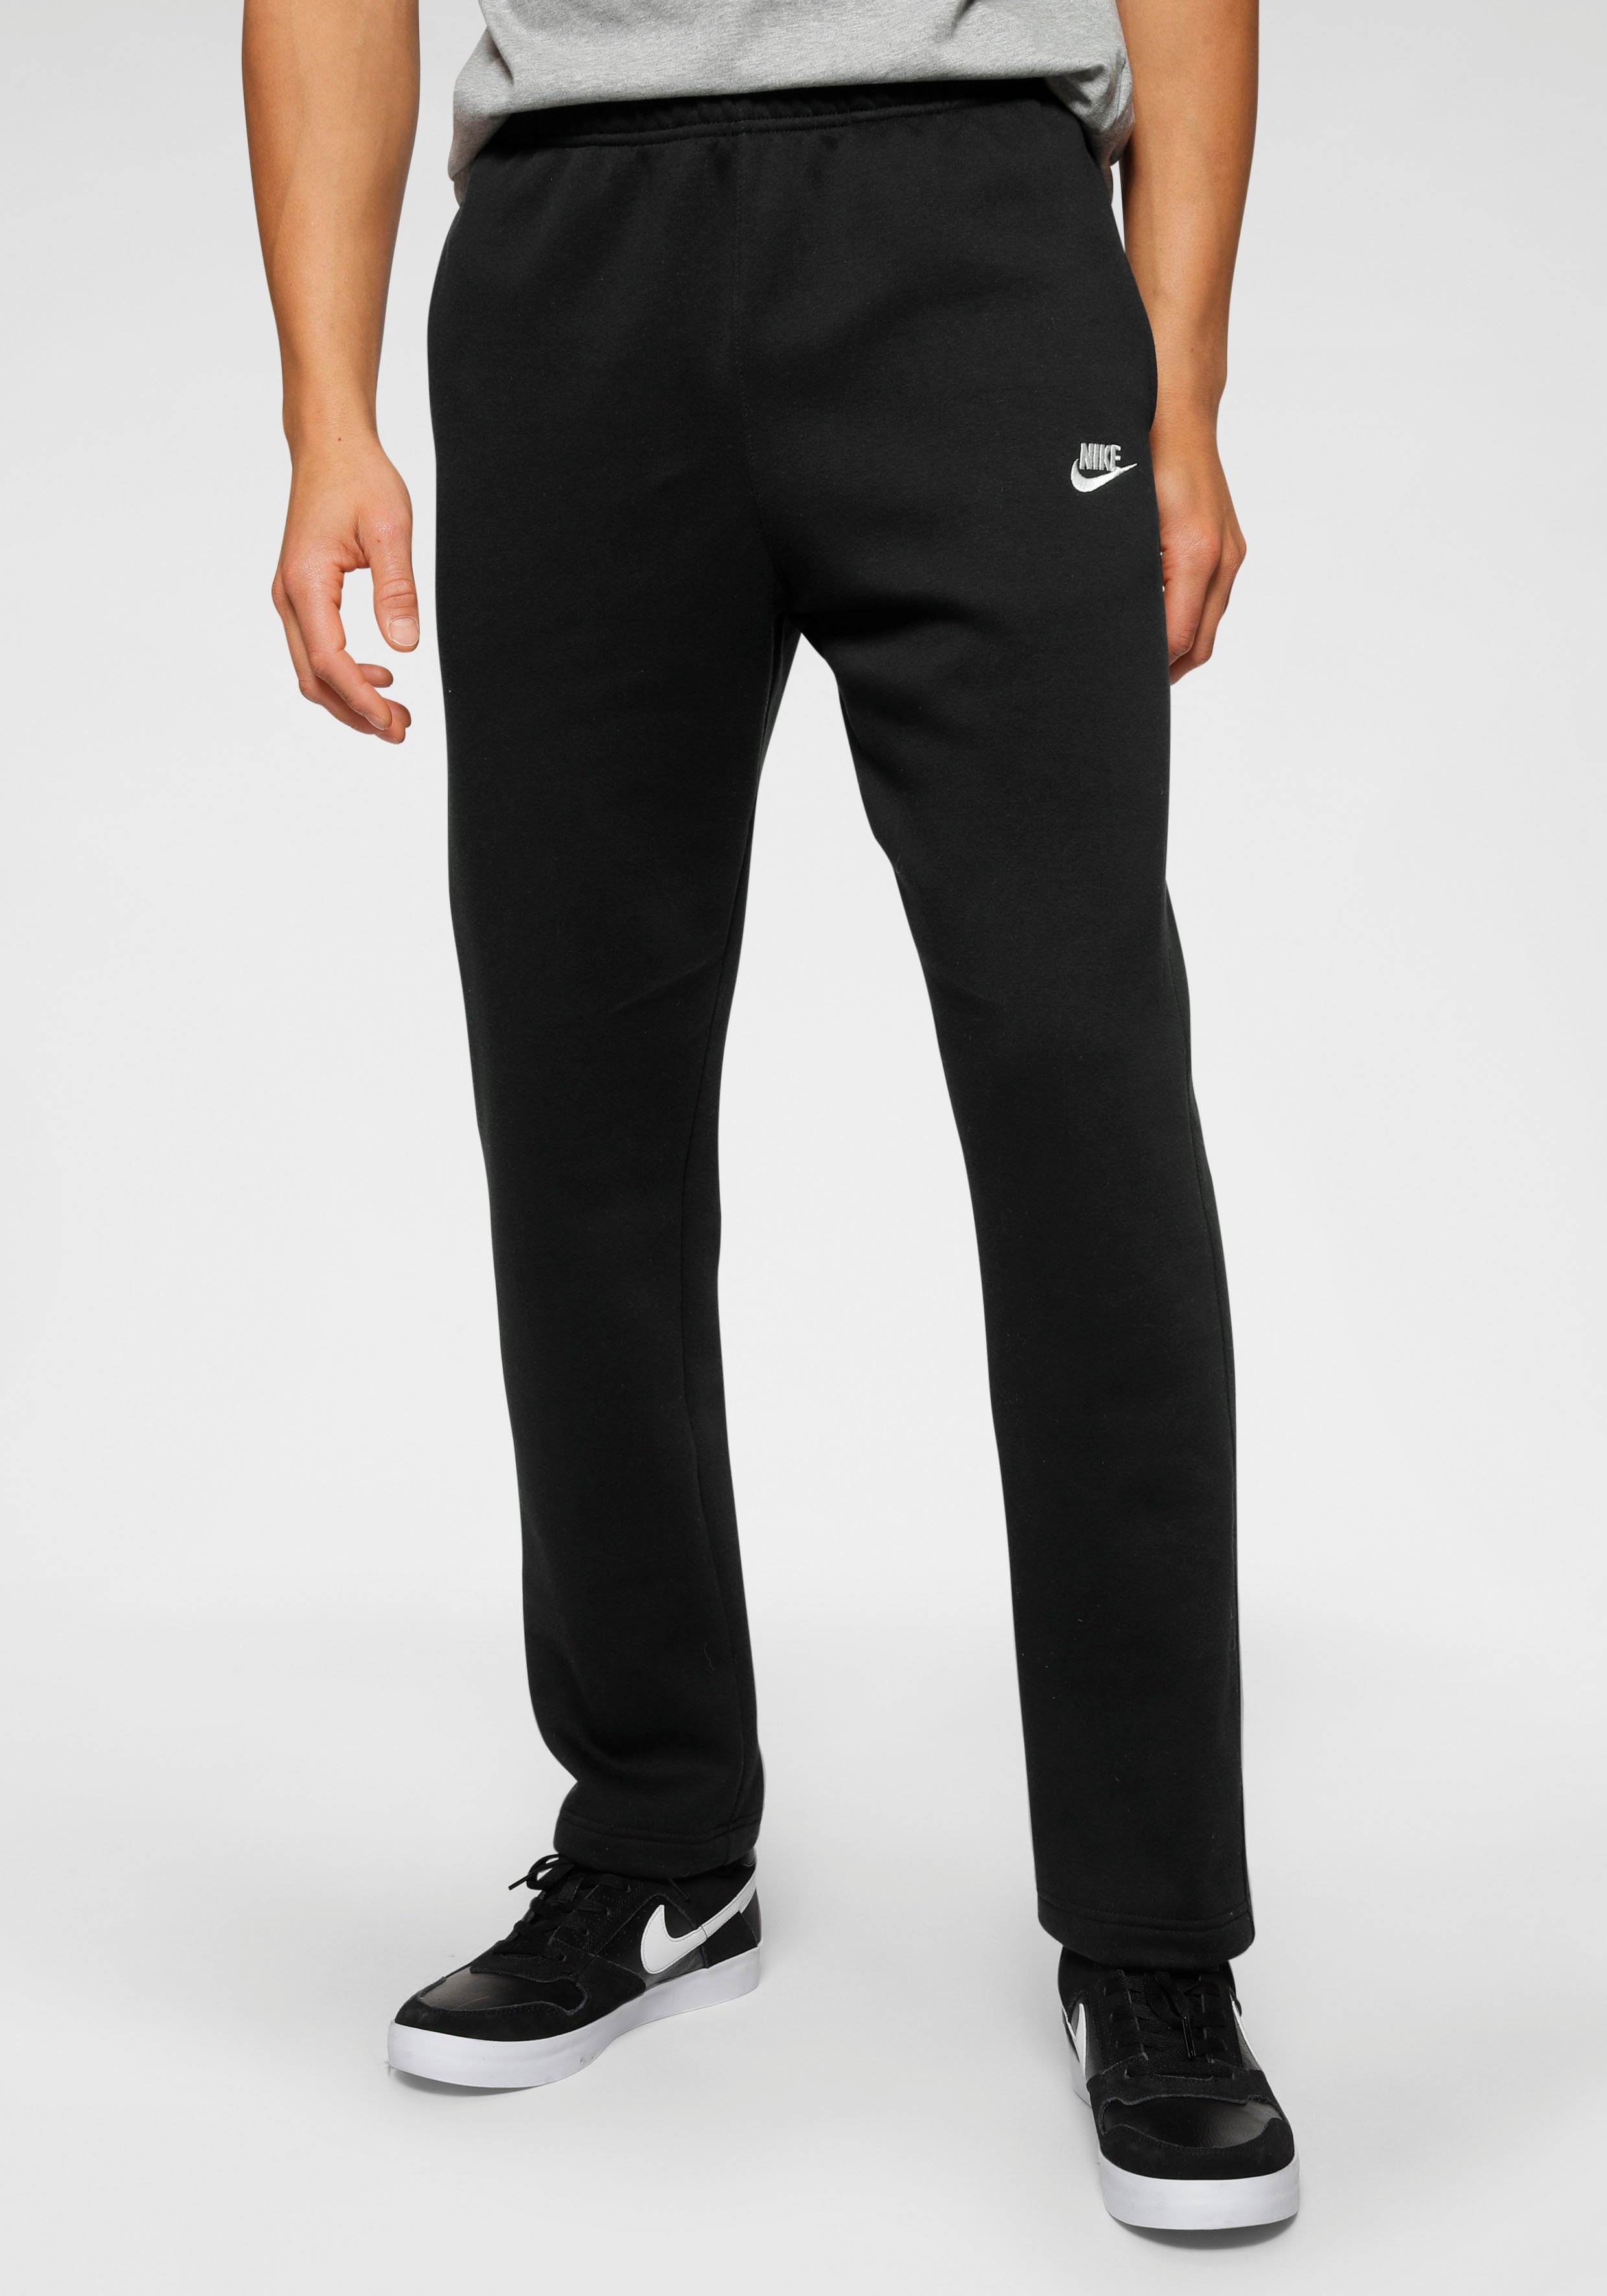 Nike Sportswear Jogginghose Club Fleece Men's Pants schwarz